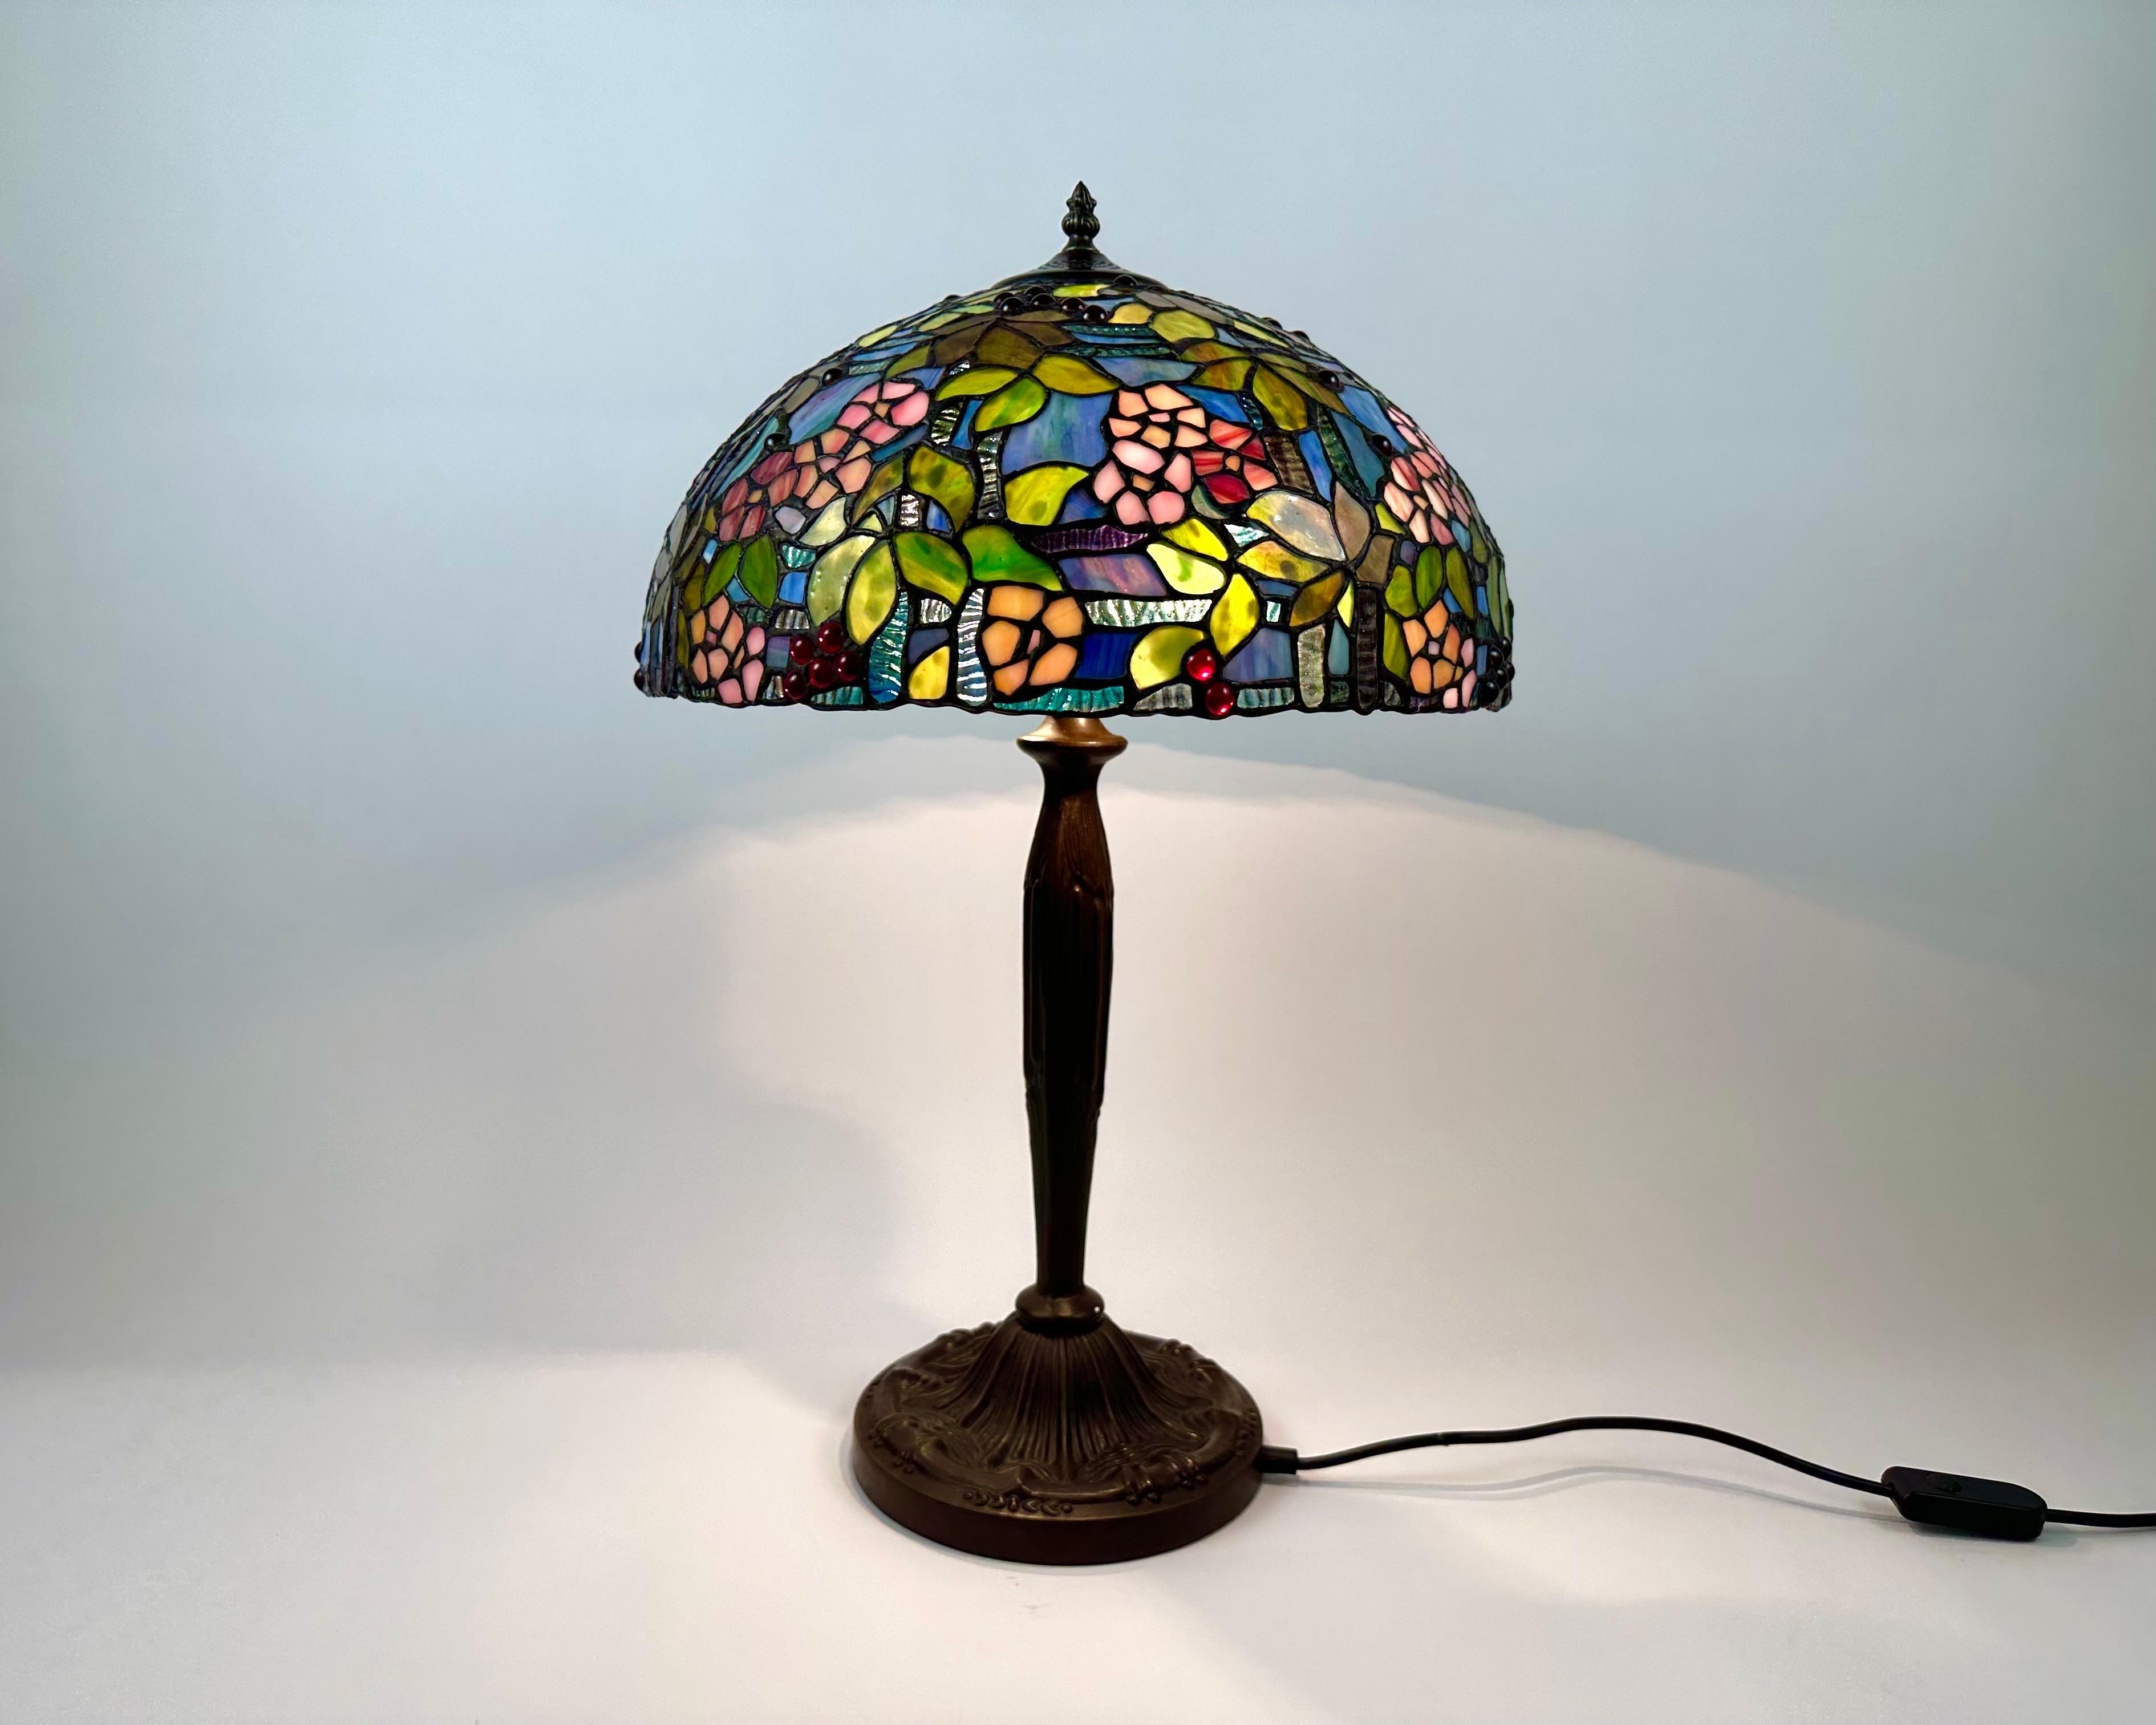 Cette magnifique lampe de table exclusive en verre coloré est fabriquée dans le style classique Tiffany en France, dans les années 1960.

L'abat-jour et la base de cette lampe ont un design unique. La base est en bronze et décorée de belles